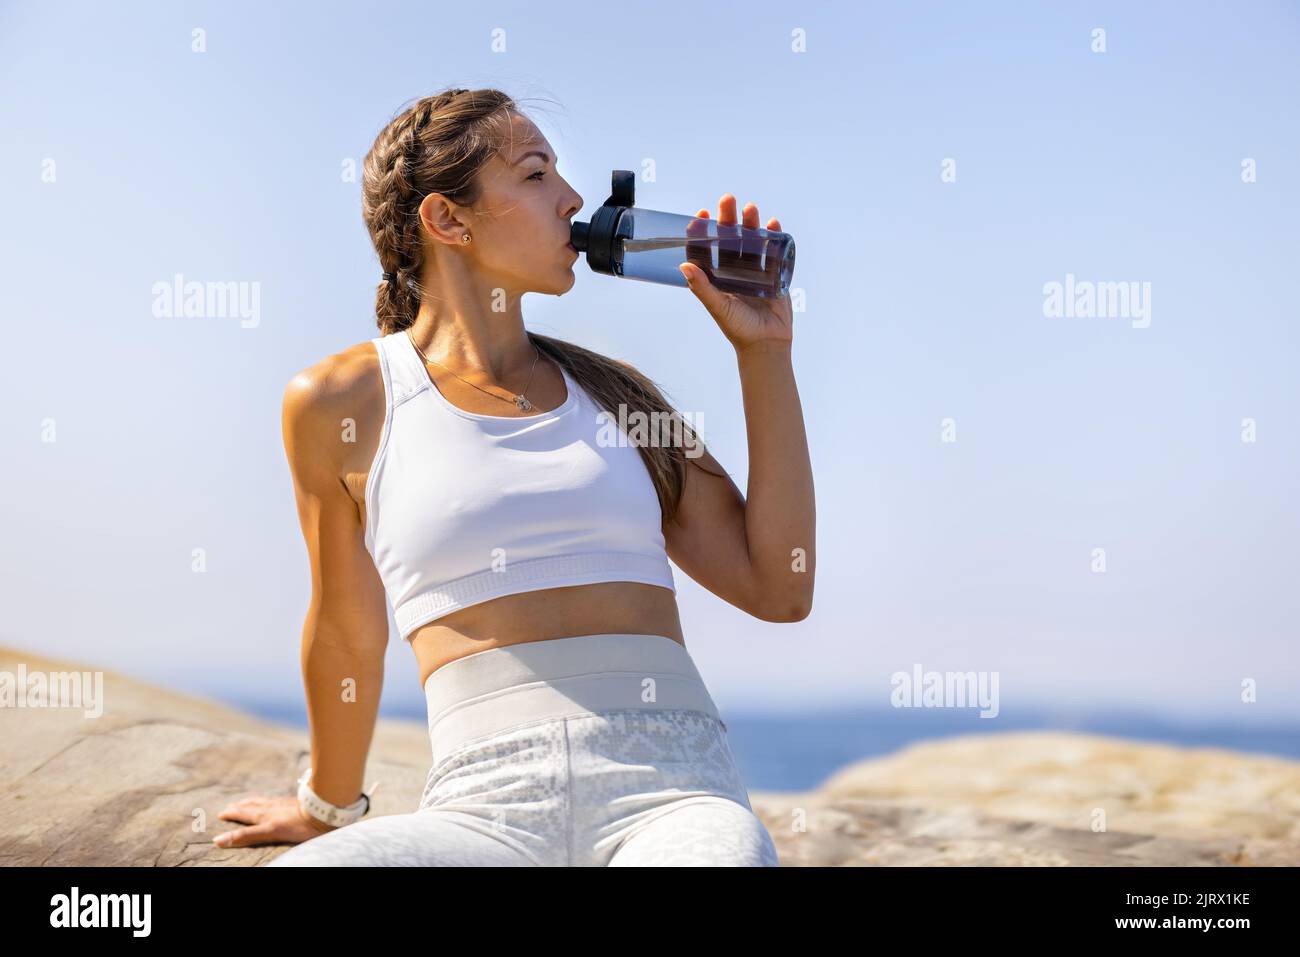 Athlète féminine buvant de l'eau pendant l'entraînement en plein air au bord de la mer Banque D'Images